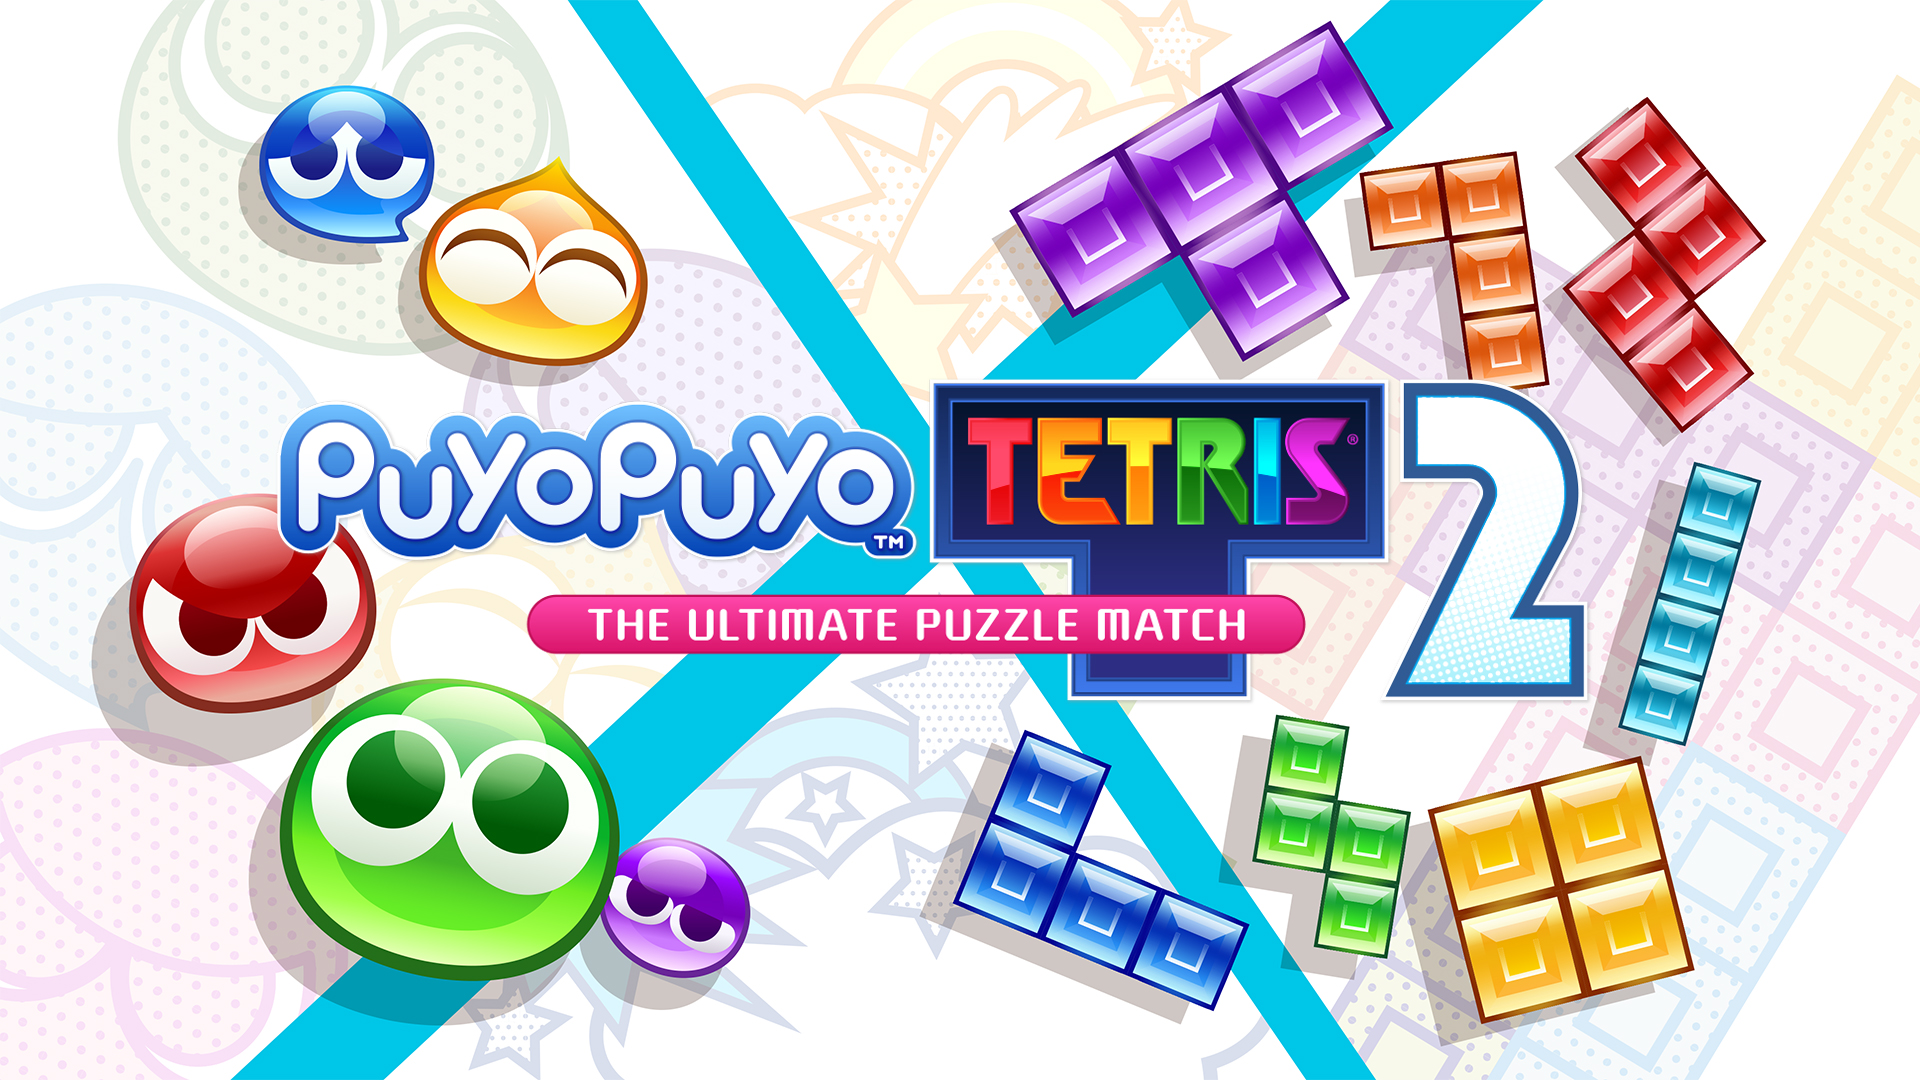 Hot Take: Puyo Puyo Tetris 2